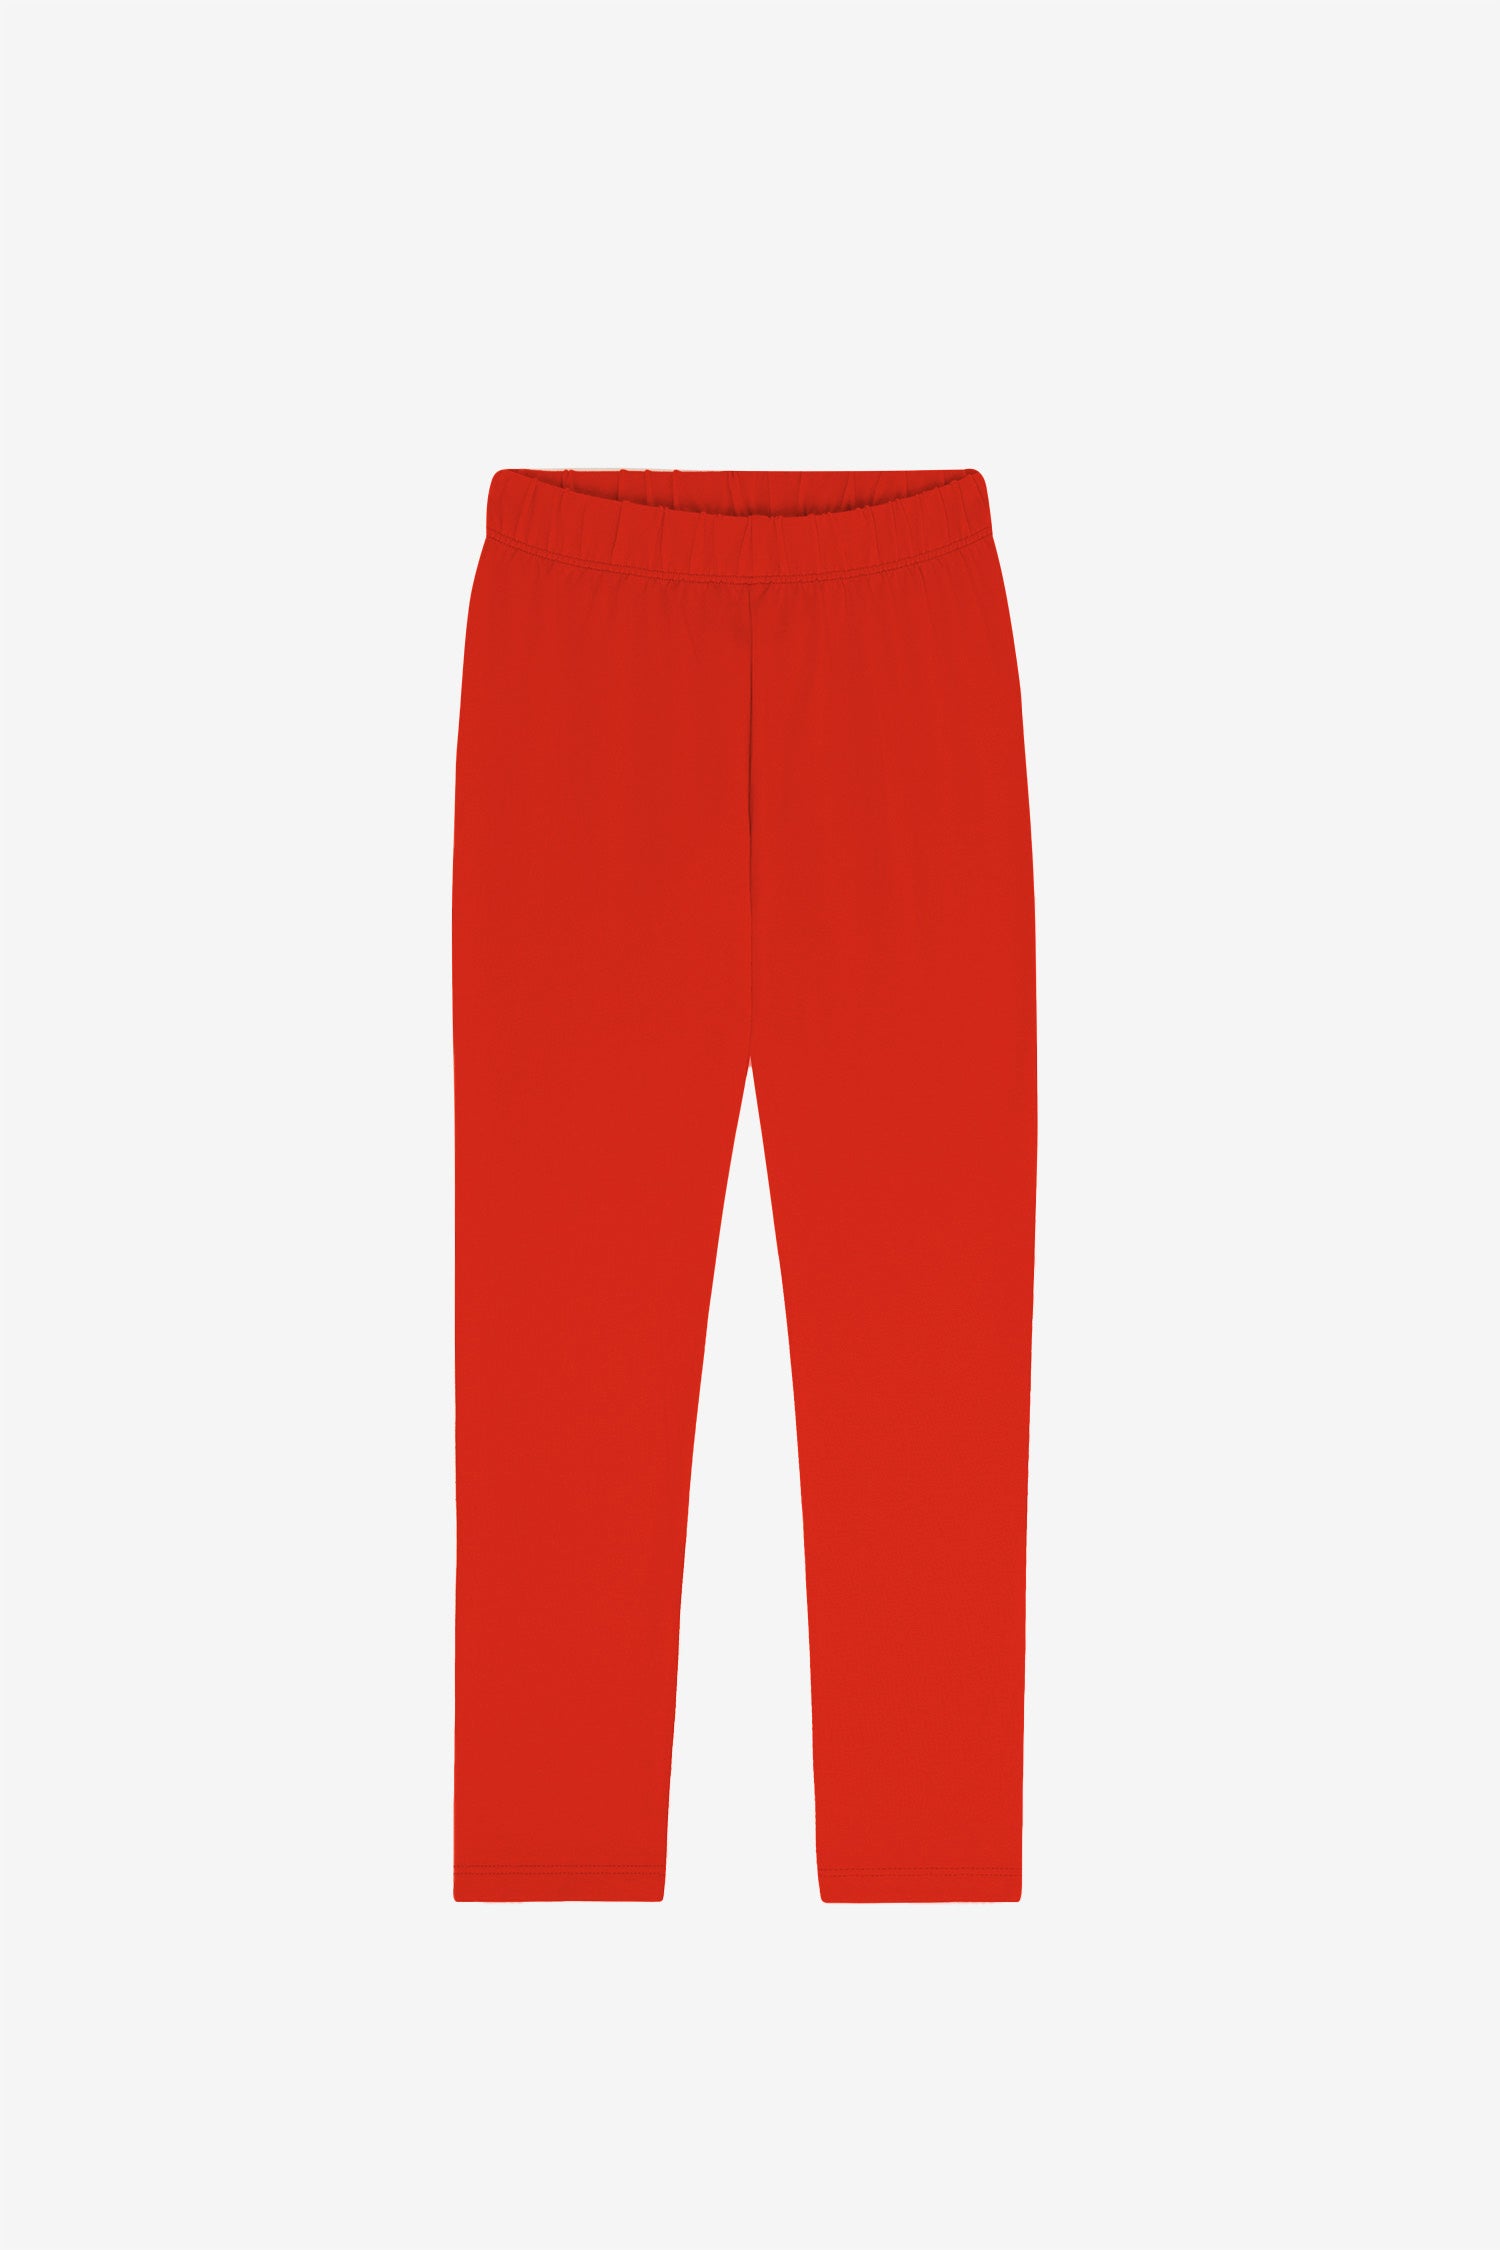 83280GD - Garment Dye Legging  Garment dye, Cotton spandex leggings,  Spandex leggings